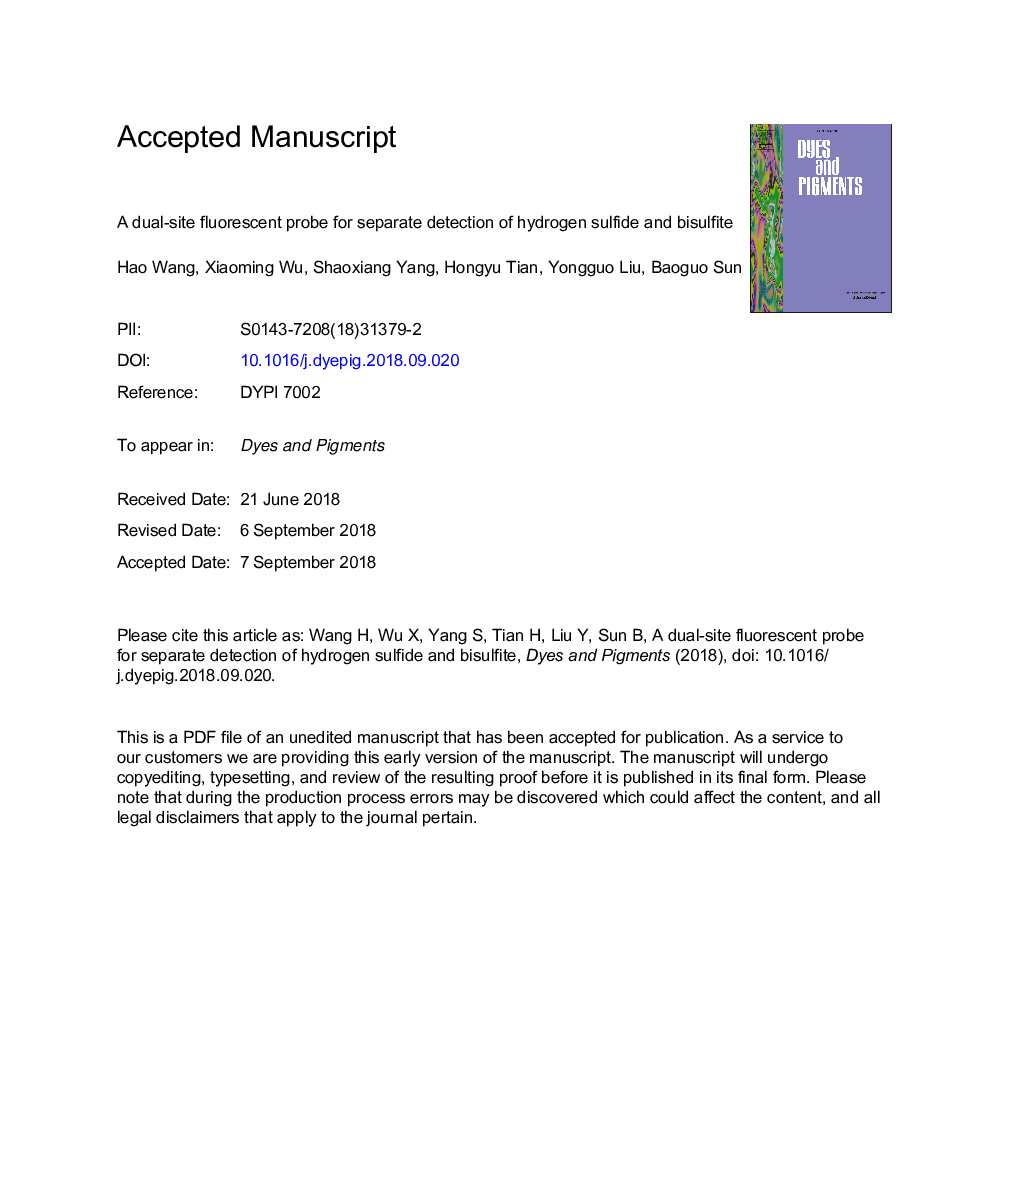 یک پروب فلورسنت دو محل برای تشخیص جداگانه سولفید هیدروژن و بیسولفیت